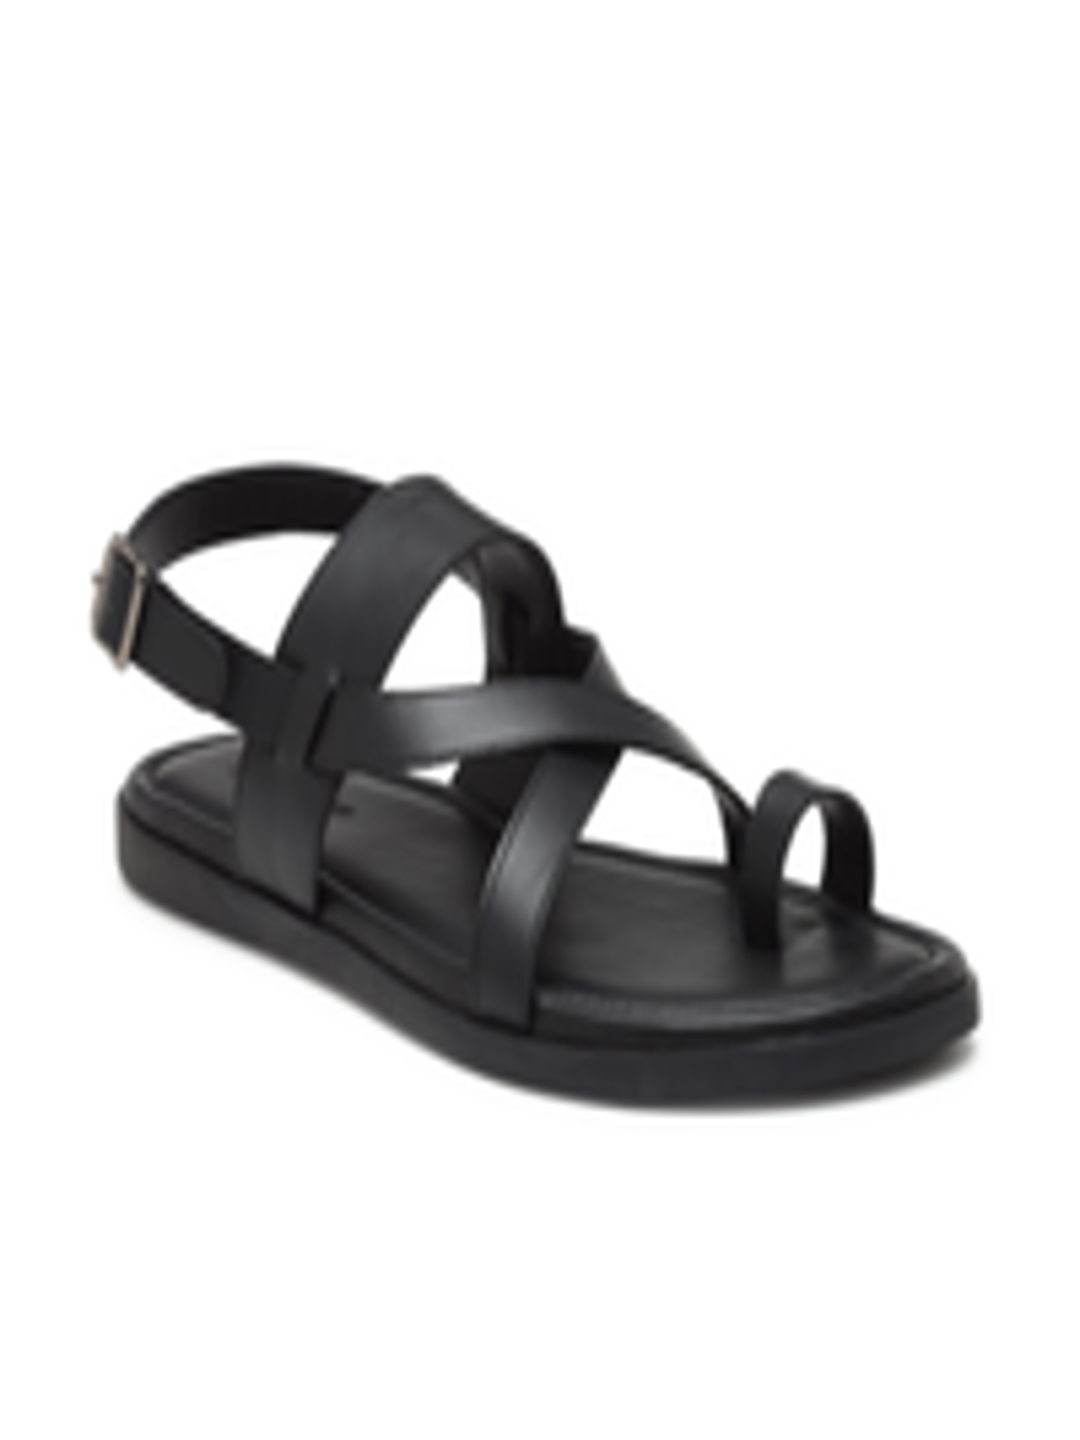 Buy BEAVER Men Black Leather Comfort Sandals - Sandals for Men 15093730 ...